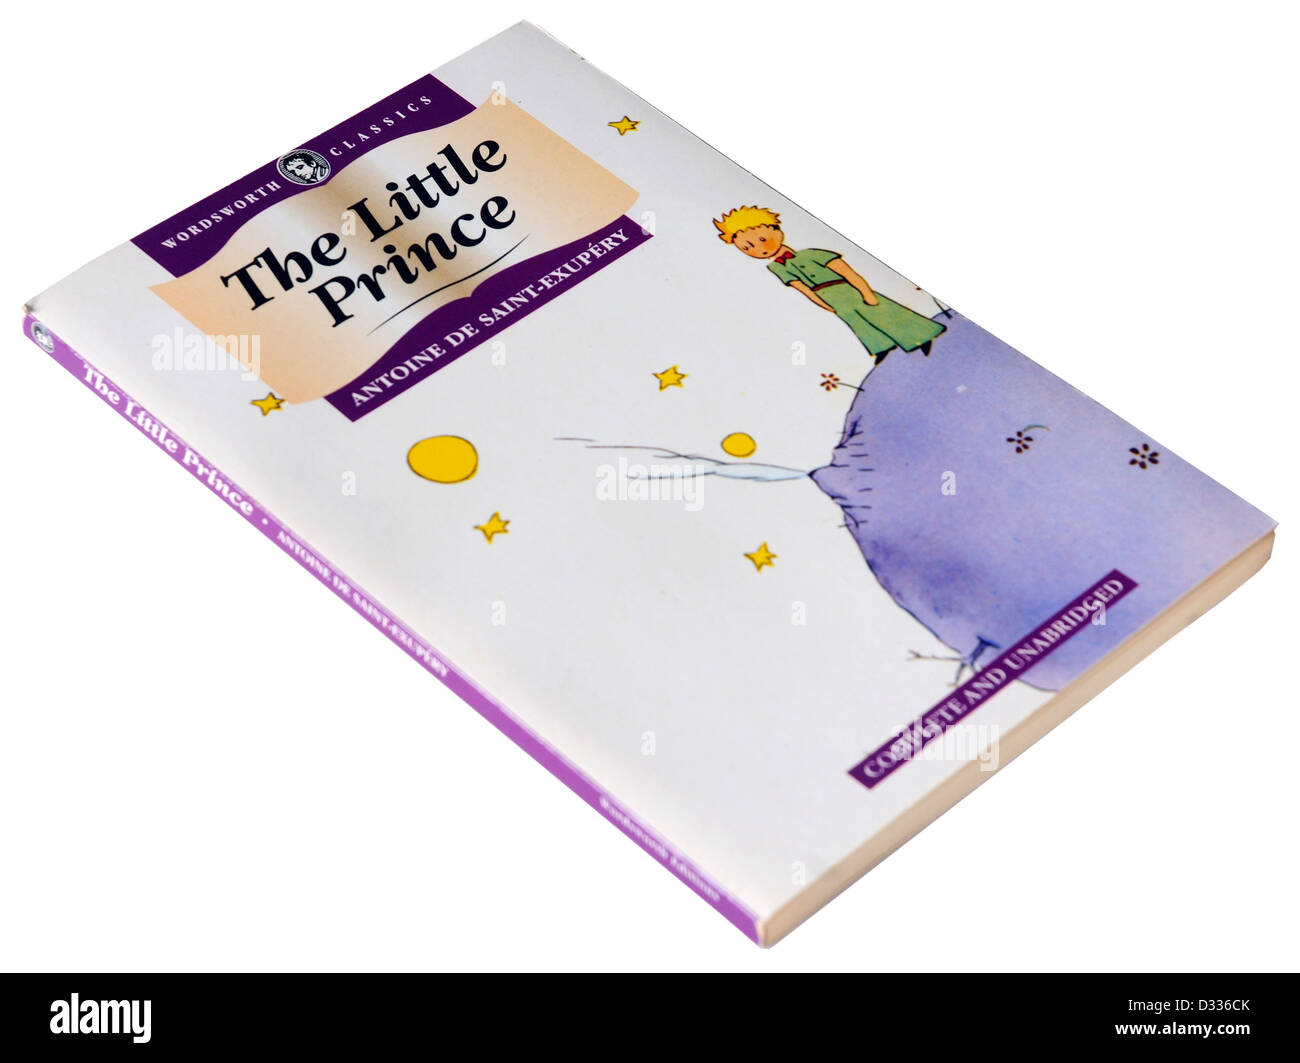 The Little Prince - Translation in Italian - Il Piccolo Principe